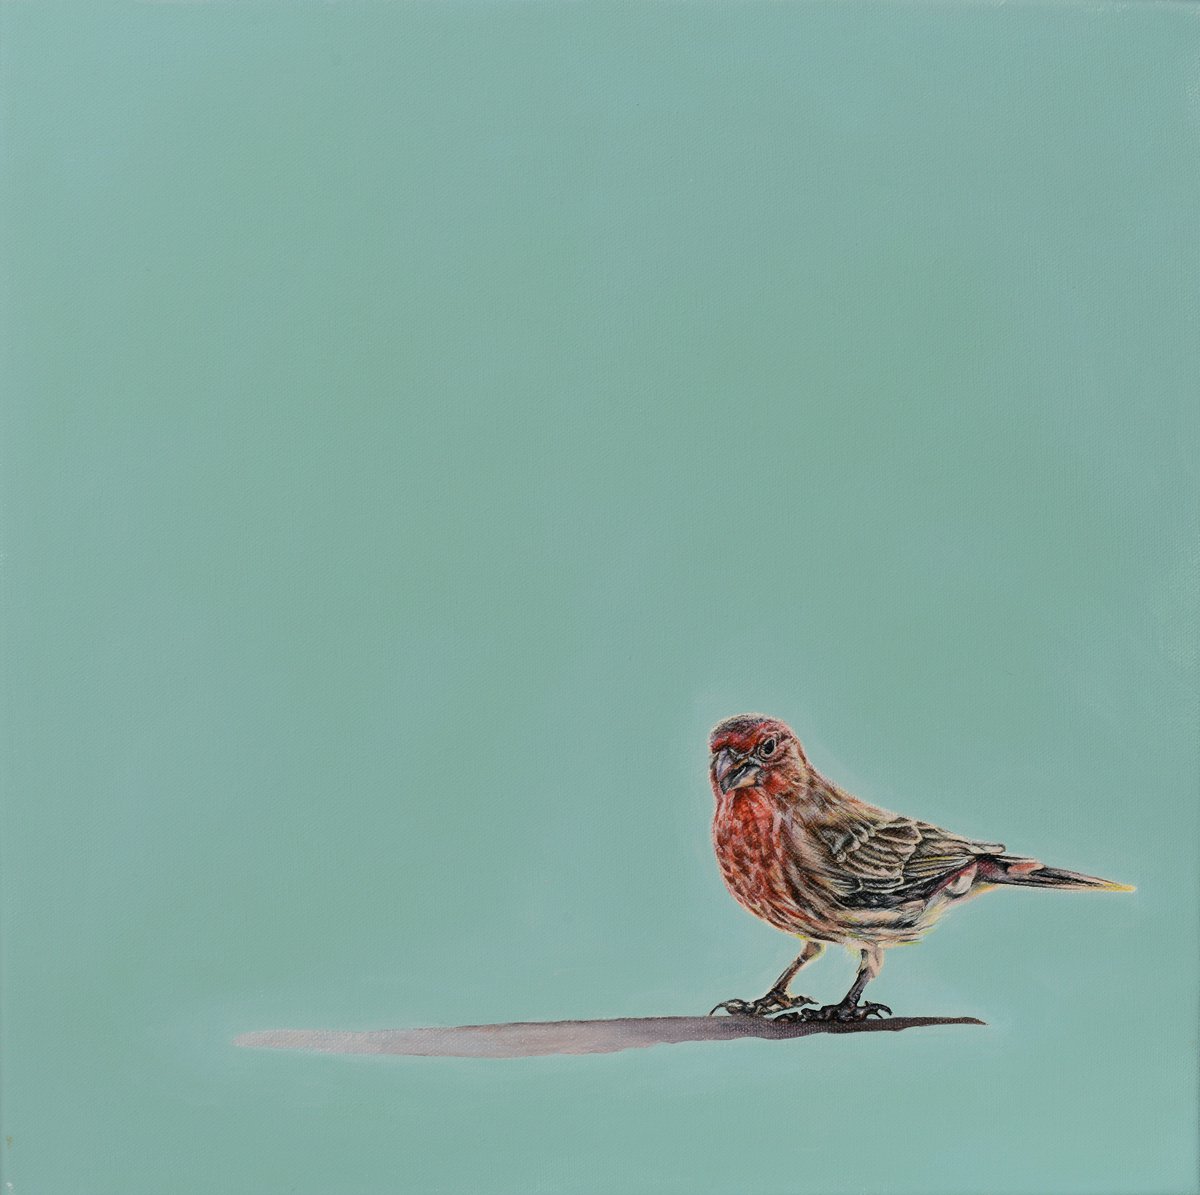 Birdsong by Natalie Toplass